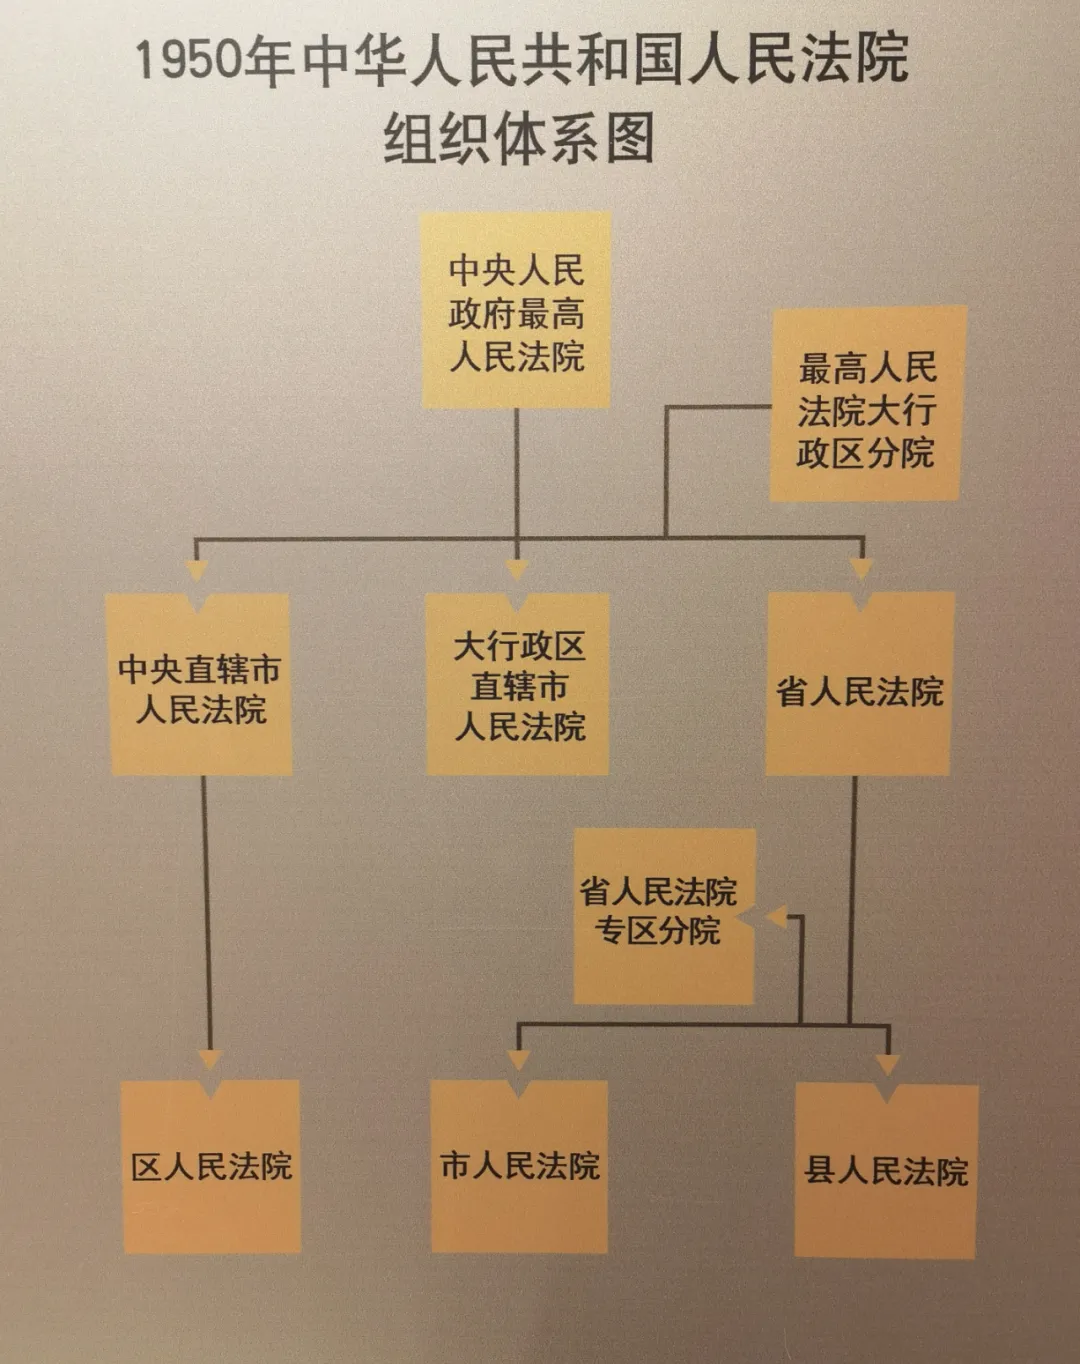 图为1950年中华人民共和国人民法院组织体系图